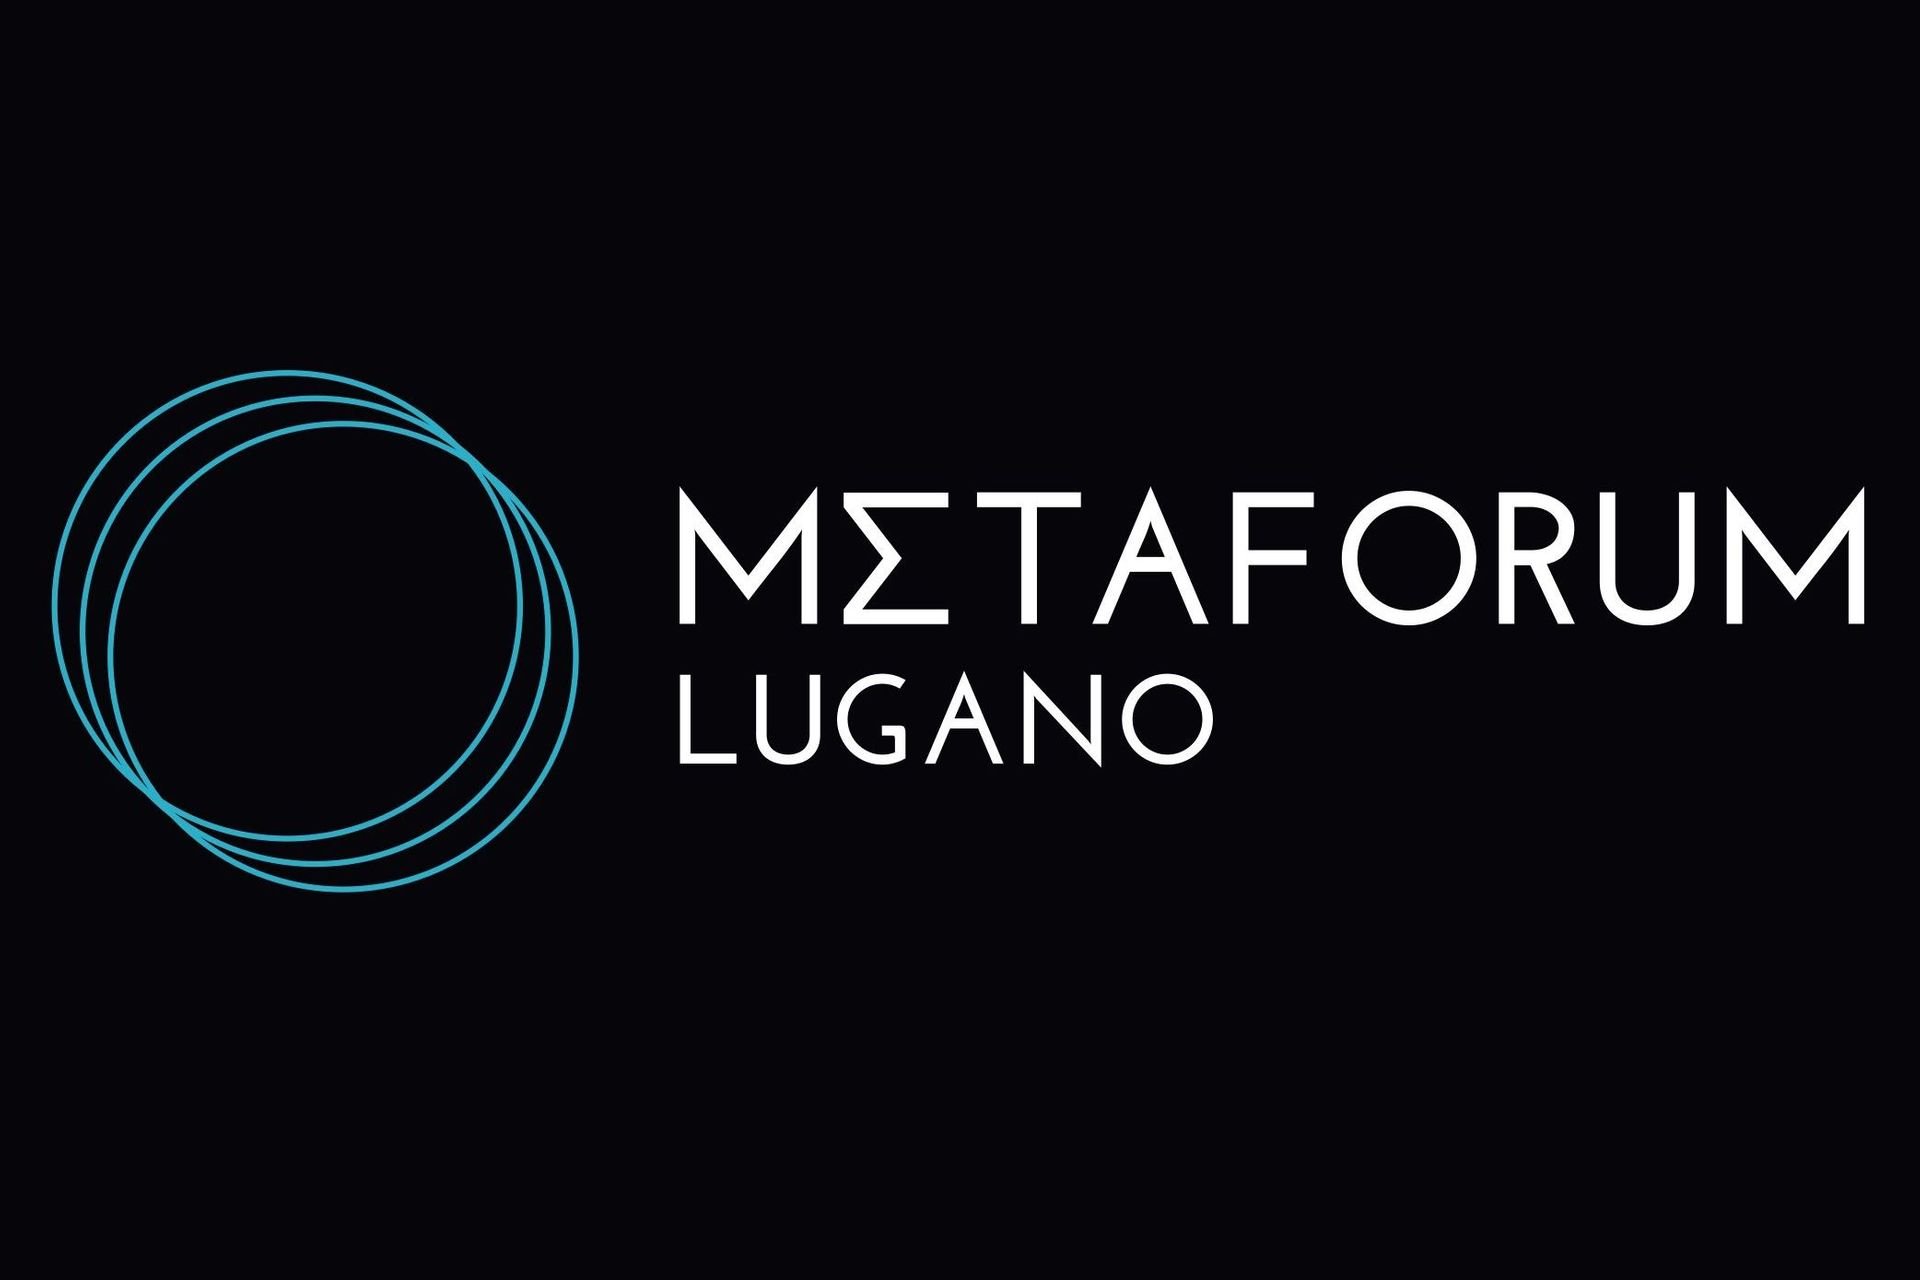 Метафорум Луганогийн лого